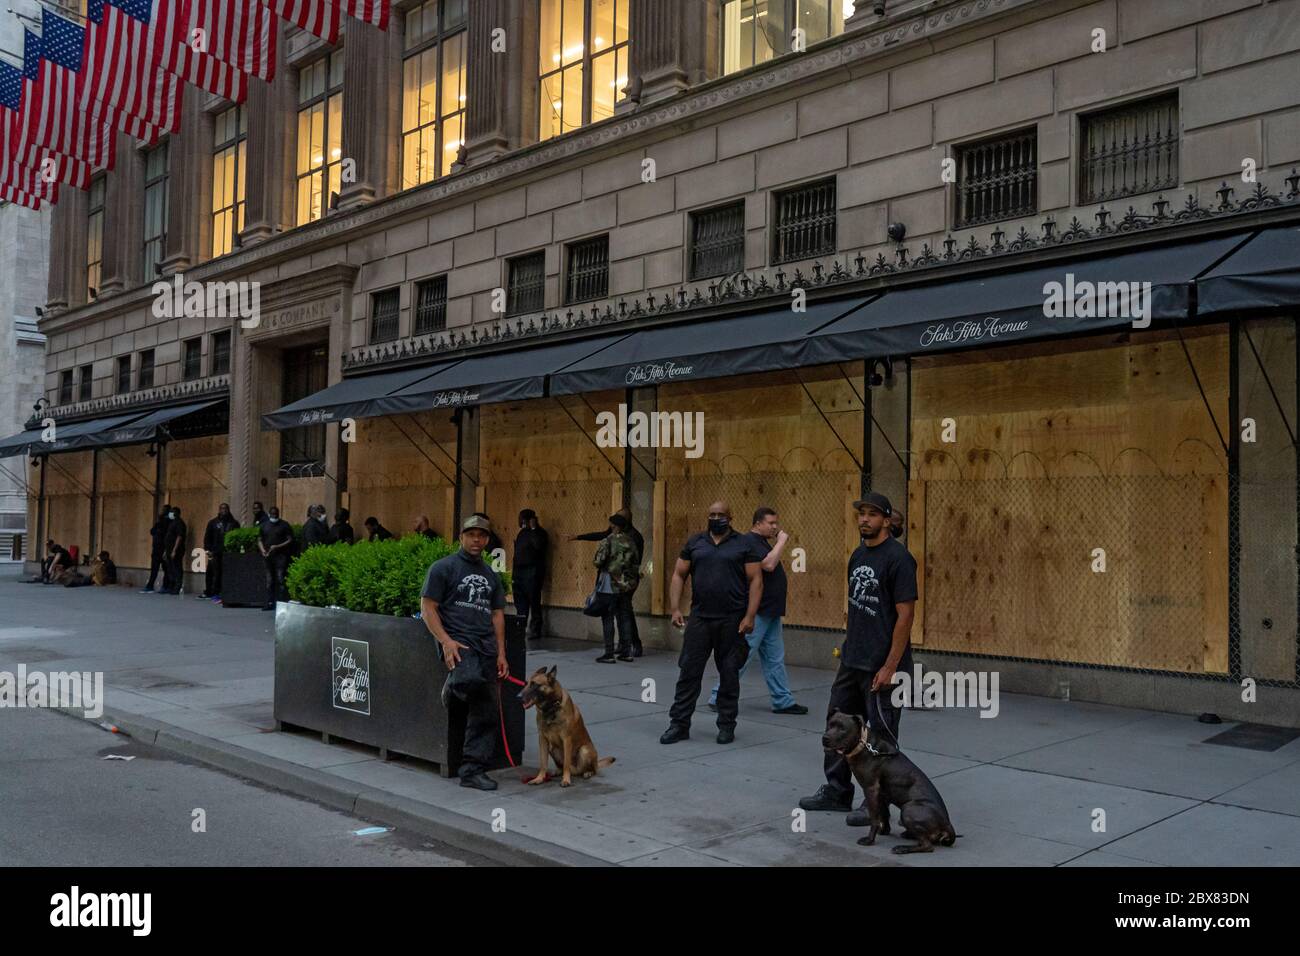 NEW YORK, NY - JUNI 03: Berühmte Saks Fifth Avenue Bereiten Sie sich auf weitere Plünderungen mit Kettenglied Zaun über den Fenstern und Sicherheitskräfte und d Stockfoto